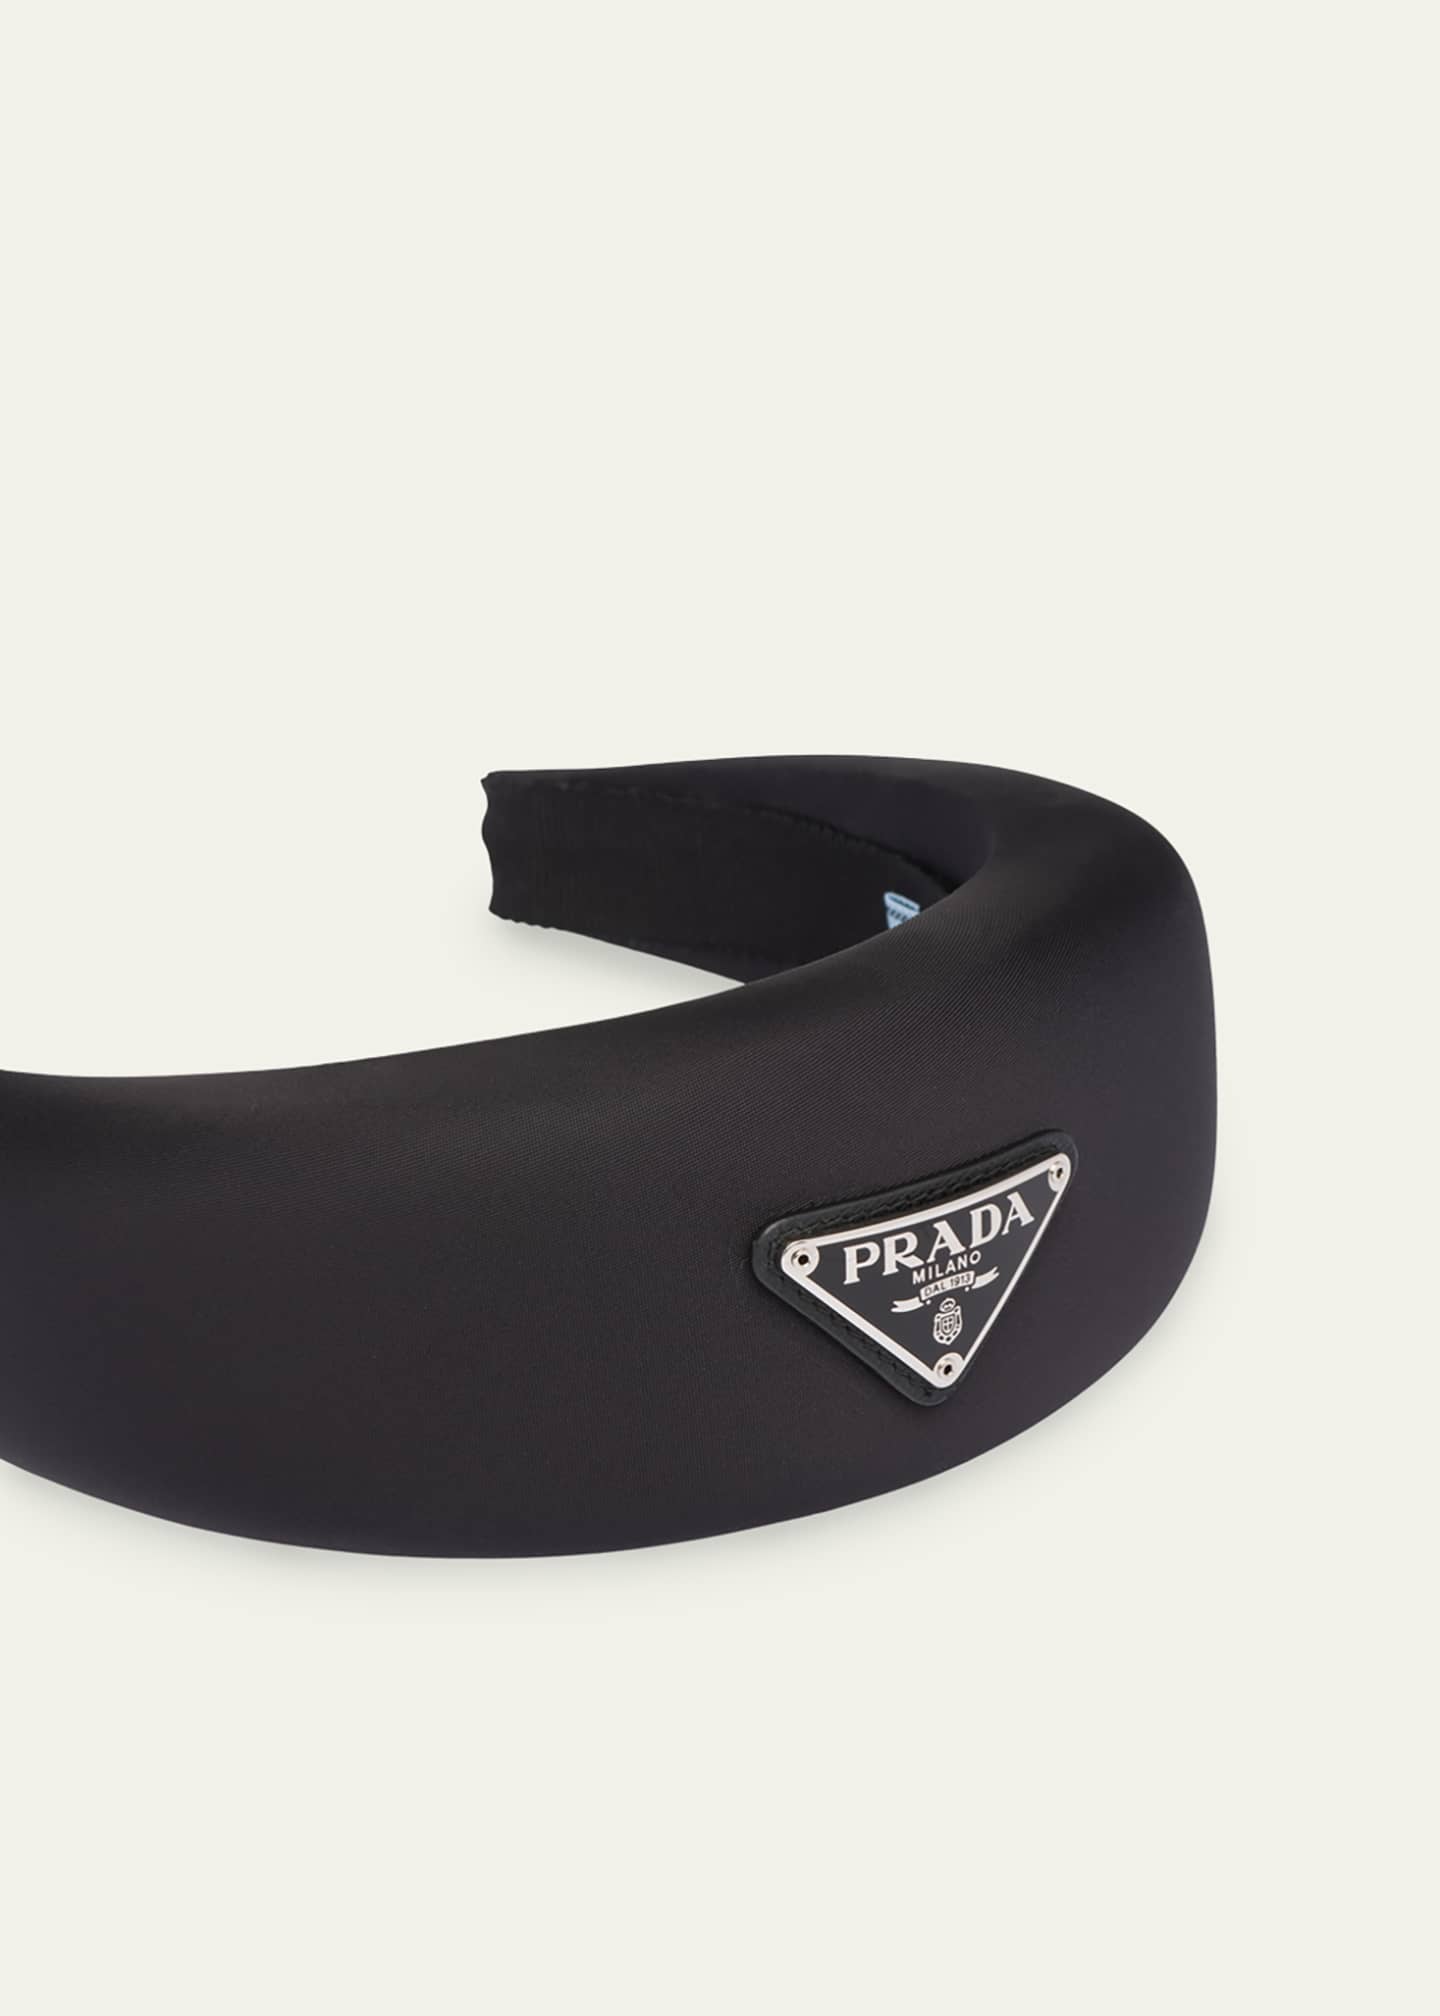 Prada Re-Nylon Padded Headband - Bergdorf Goodman